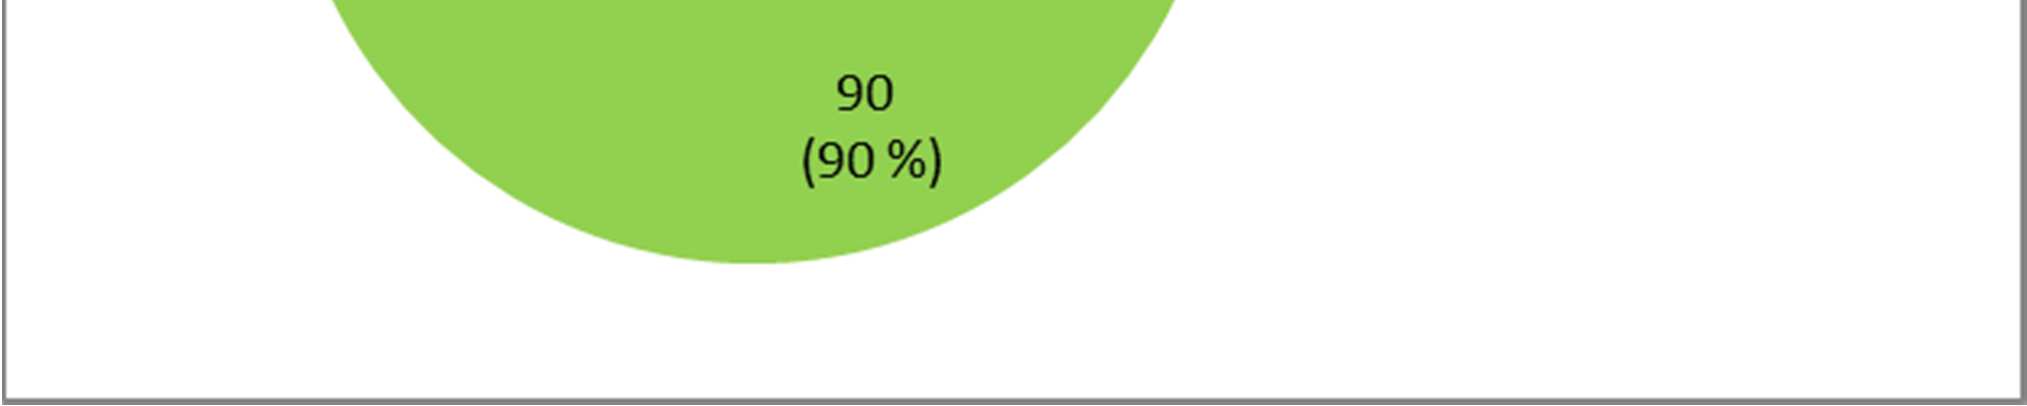 41/82 (50%) de los PIK3CA nativos no respondieron al tratamiento frente a 4/9 (44,44%) con PIK3CA mutado (Tabla 15).